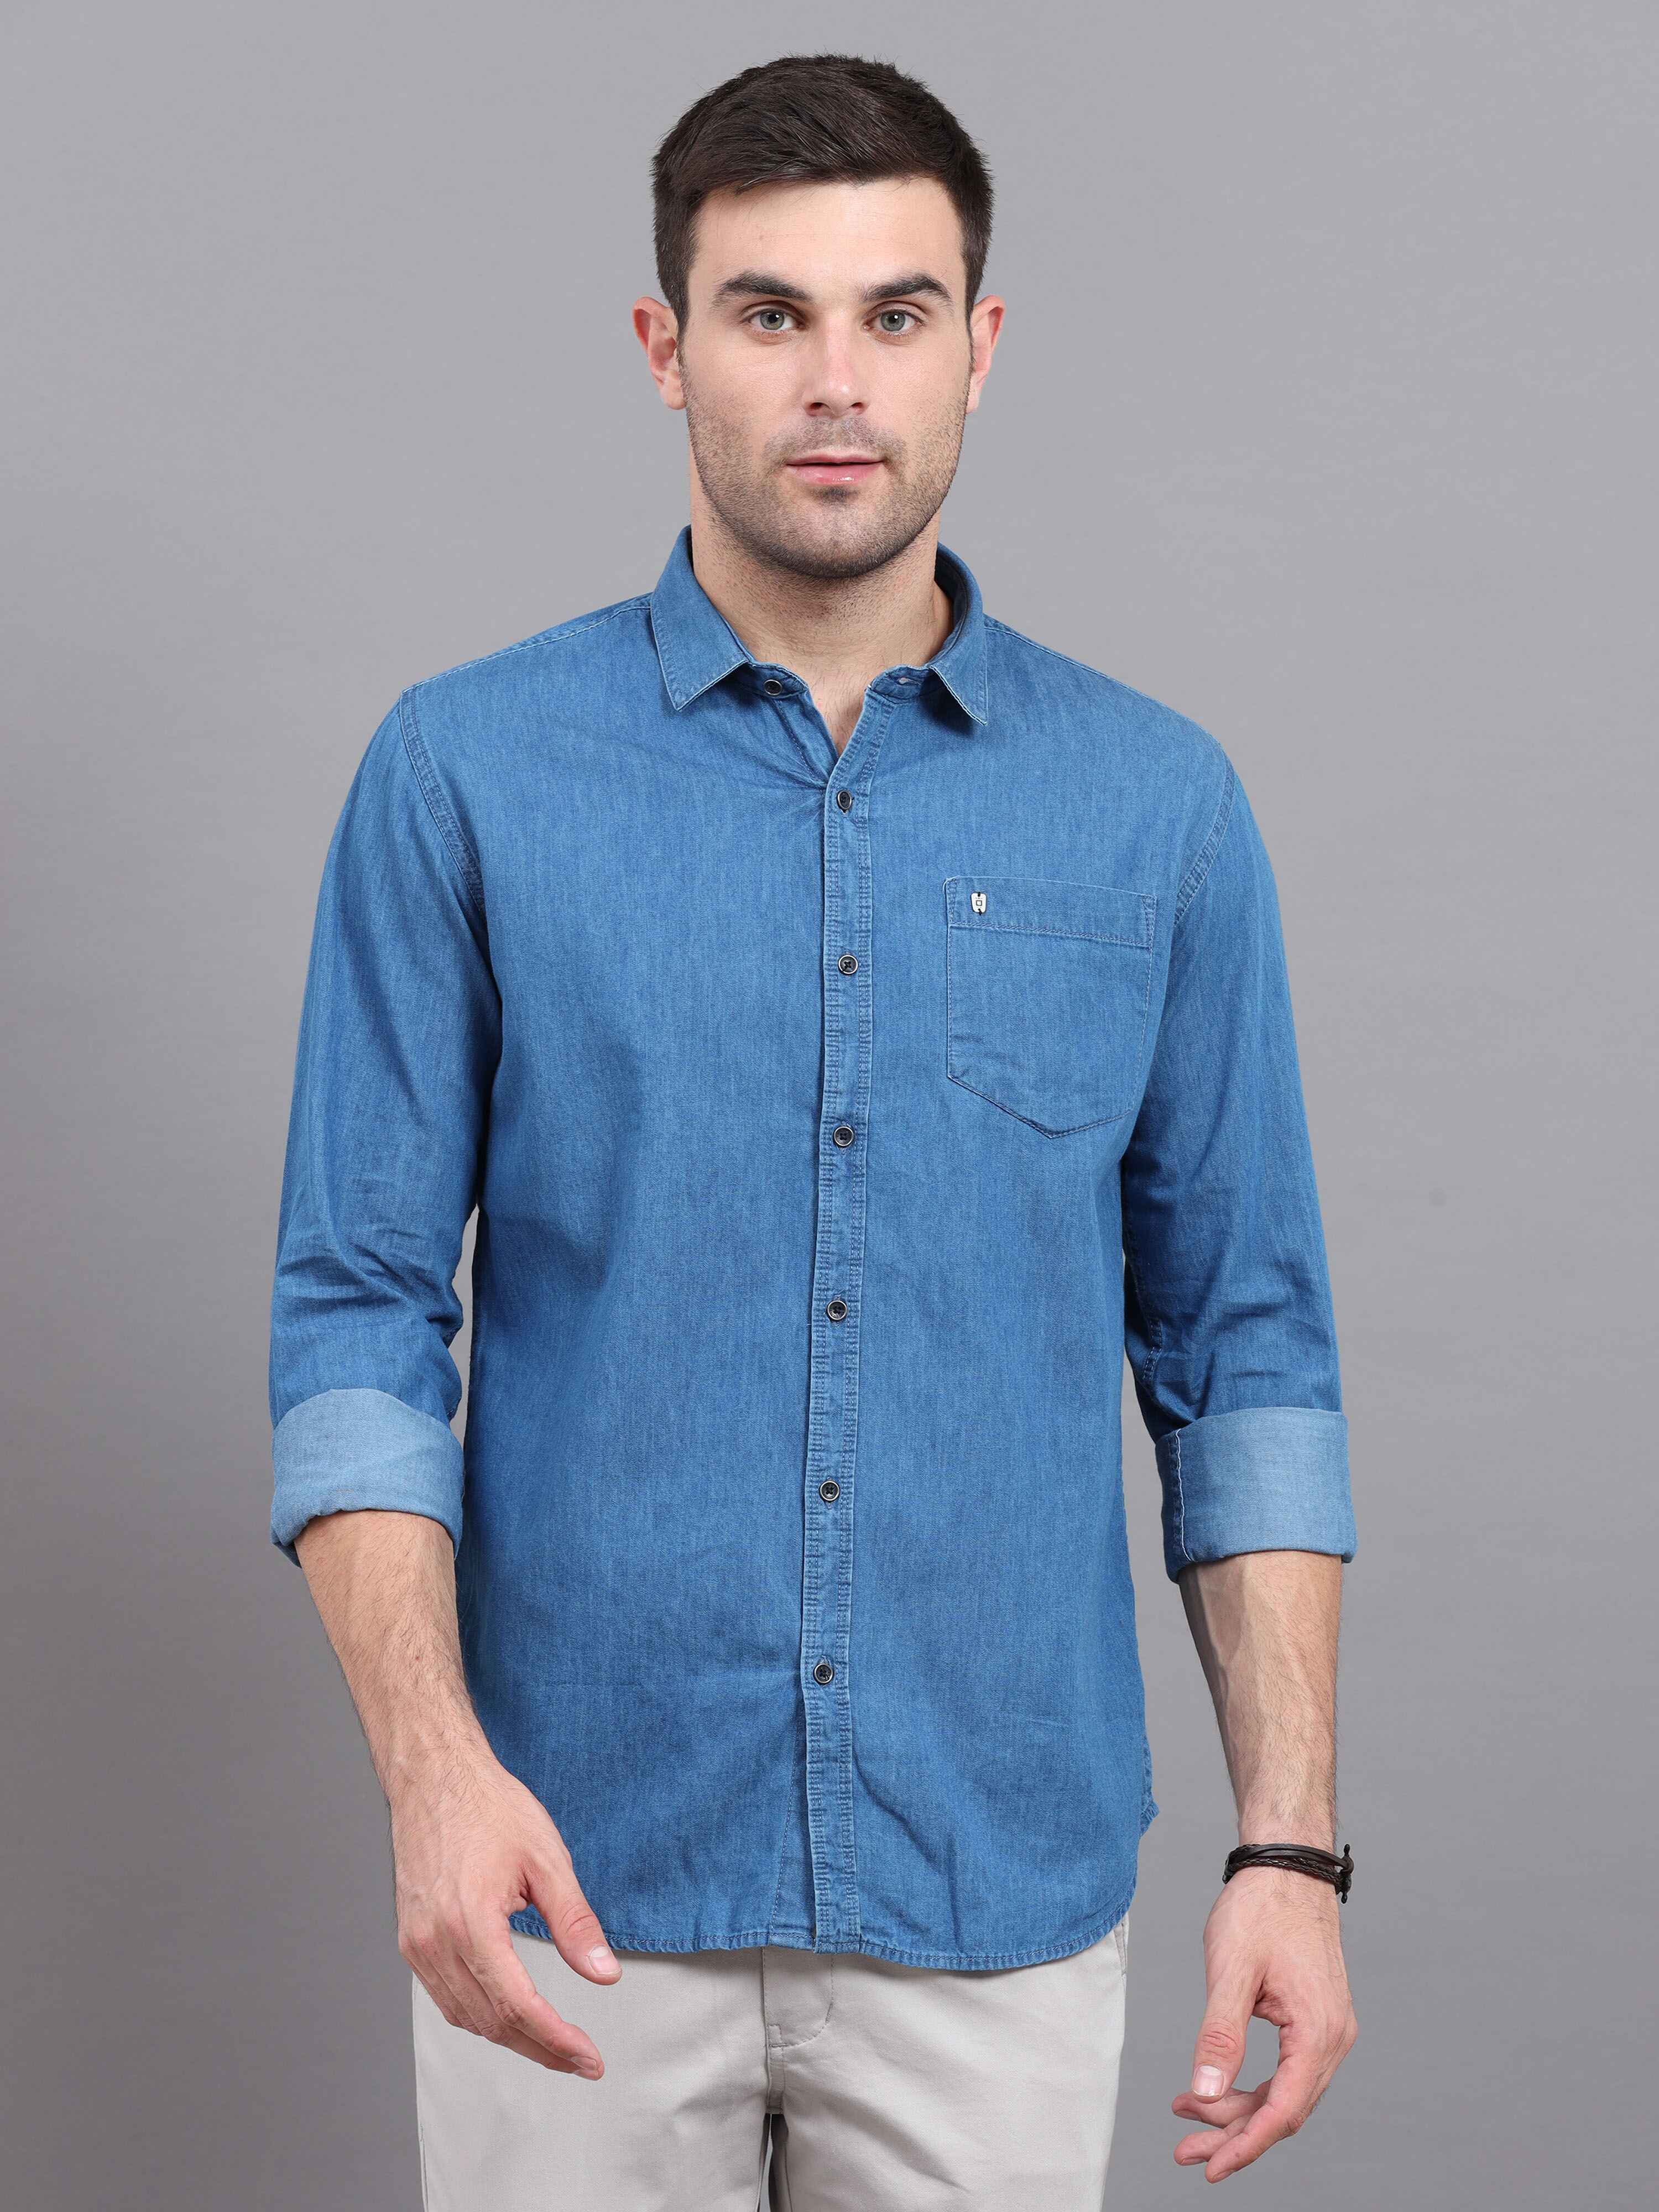 Denim Shirts For Men ( Like Jean Shirts)